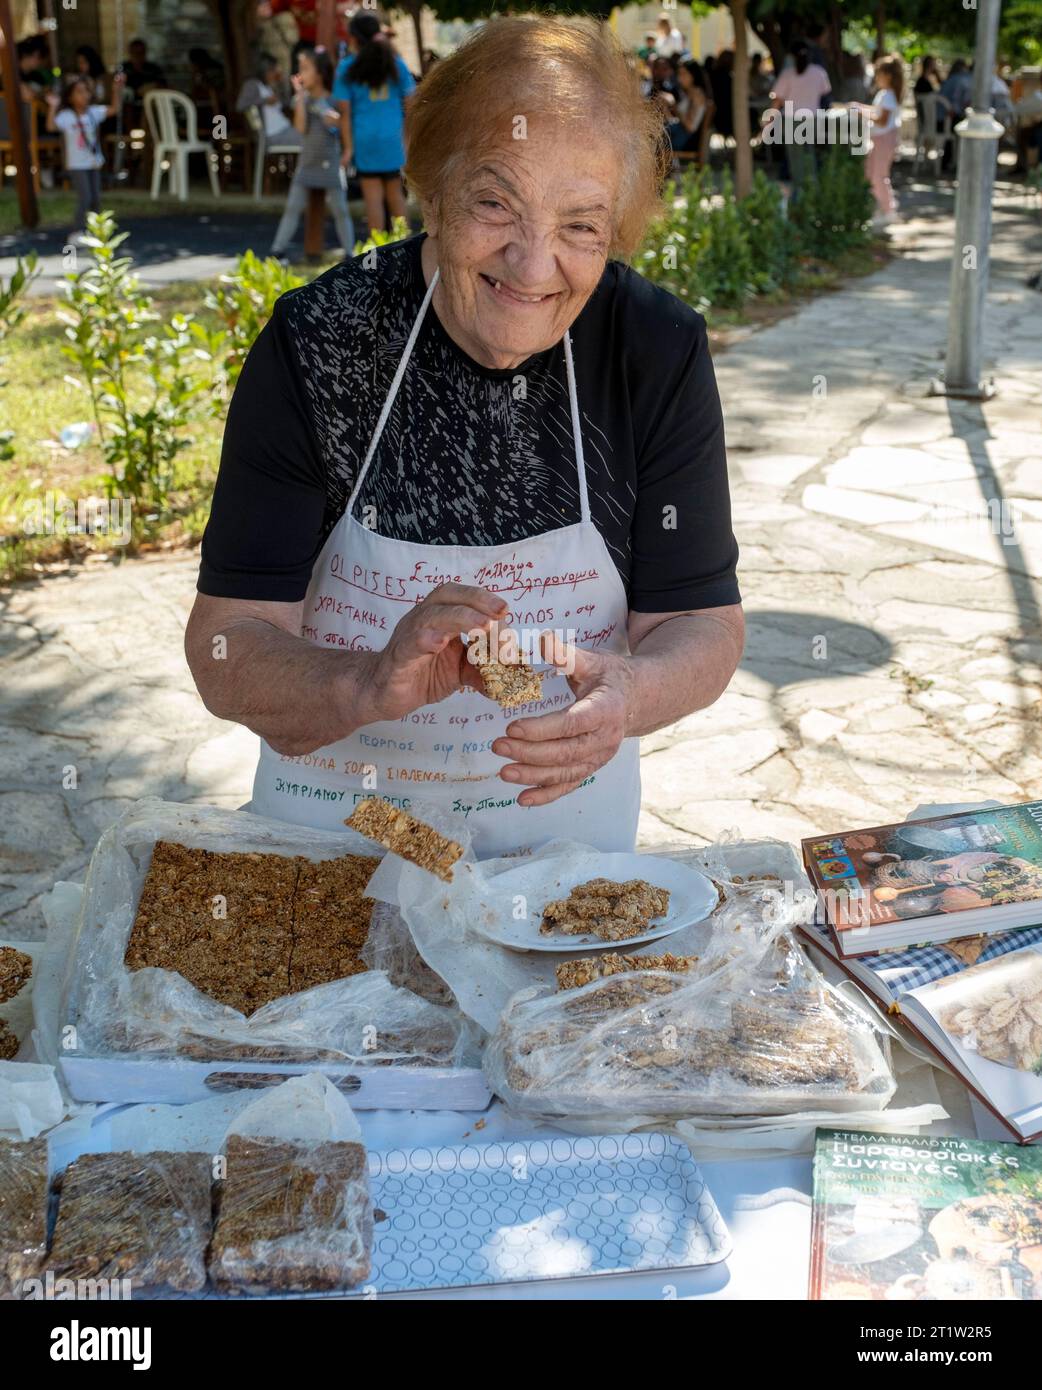 Une dame senior vendant des barres Pasteli à base de noix et de miel au Festival de l'olivier Amargeti, Chypre. Pasteli est un bar traditionnel chypriote sucré. Banque D'Images